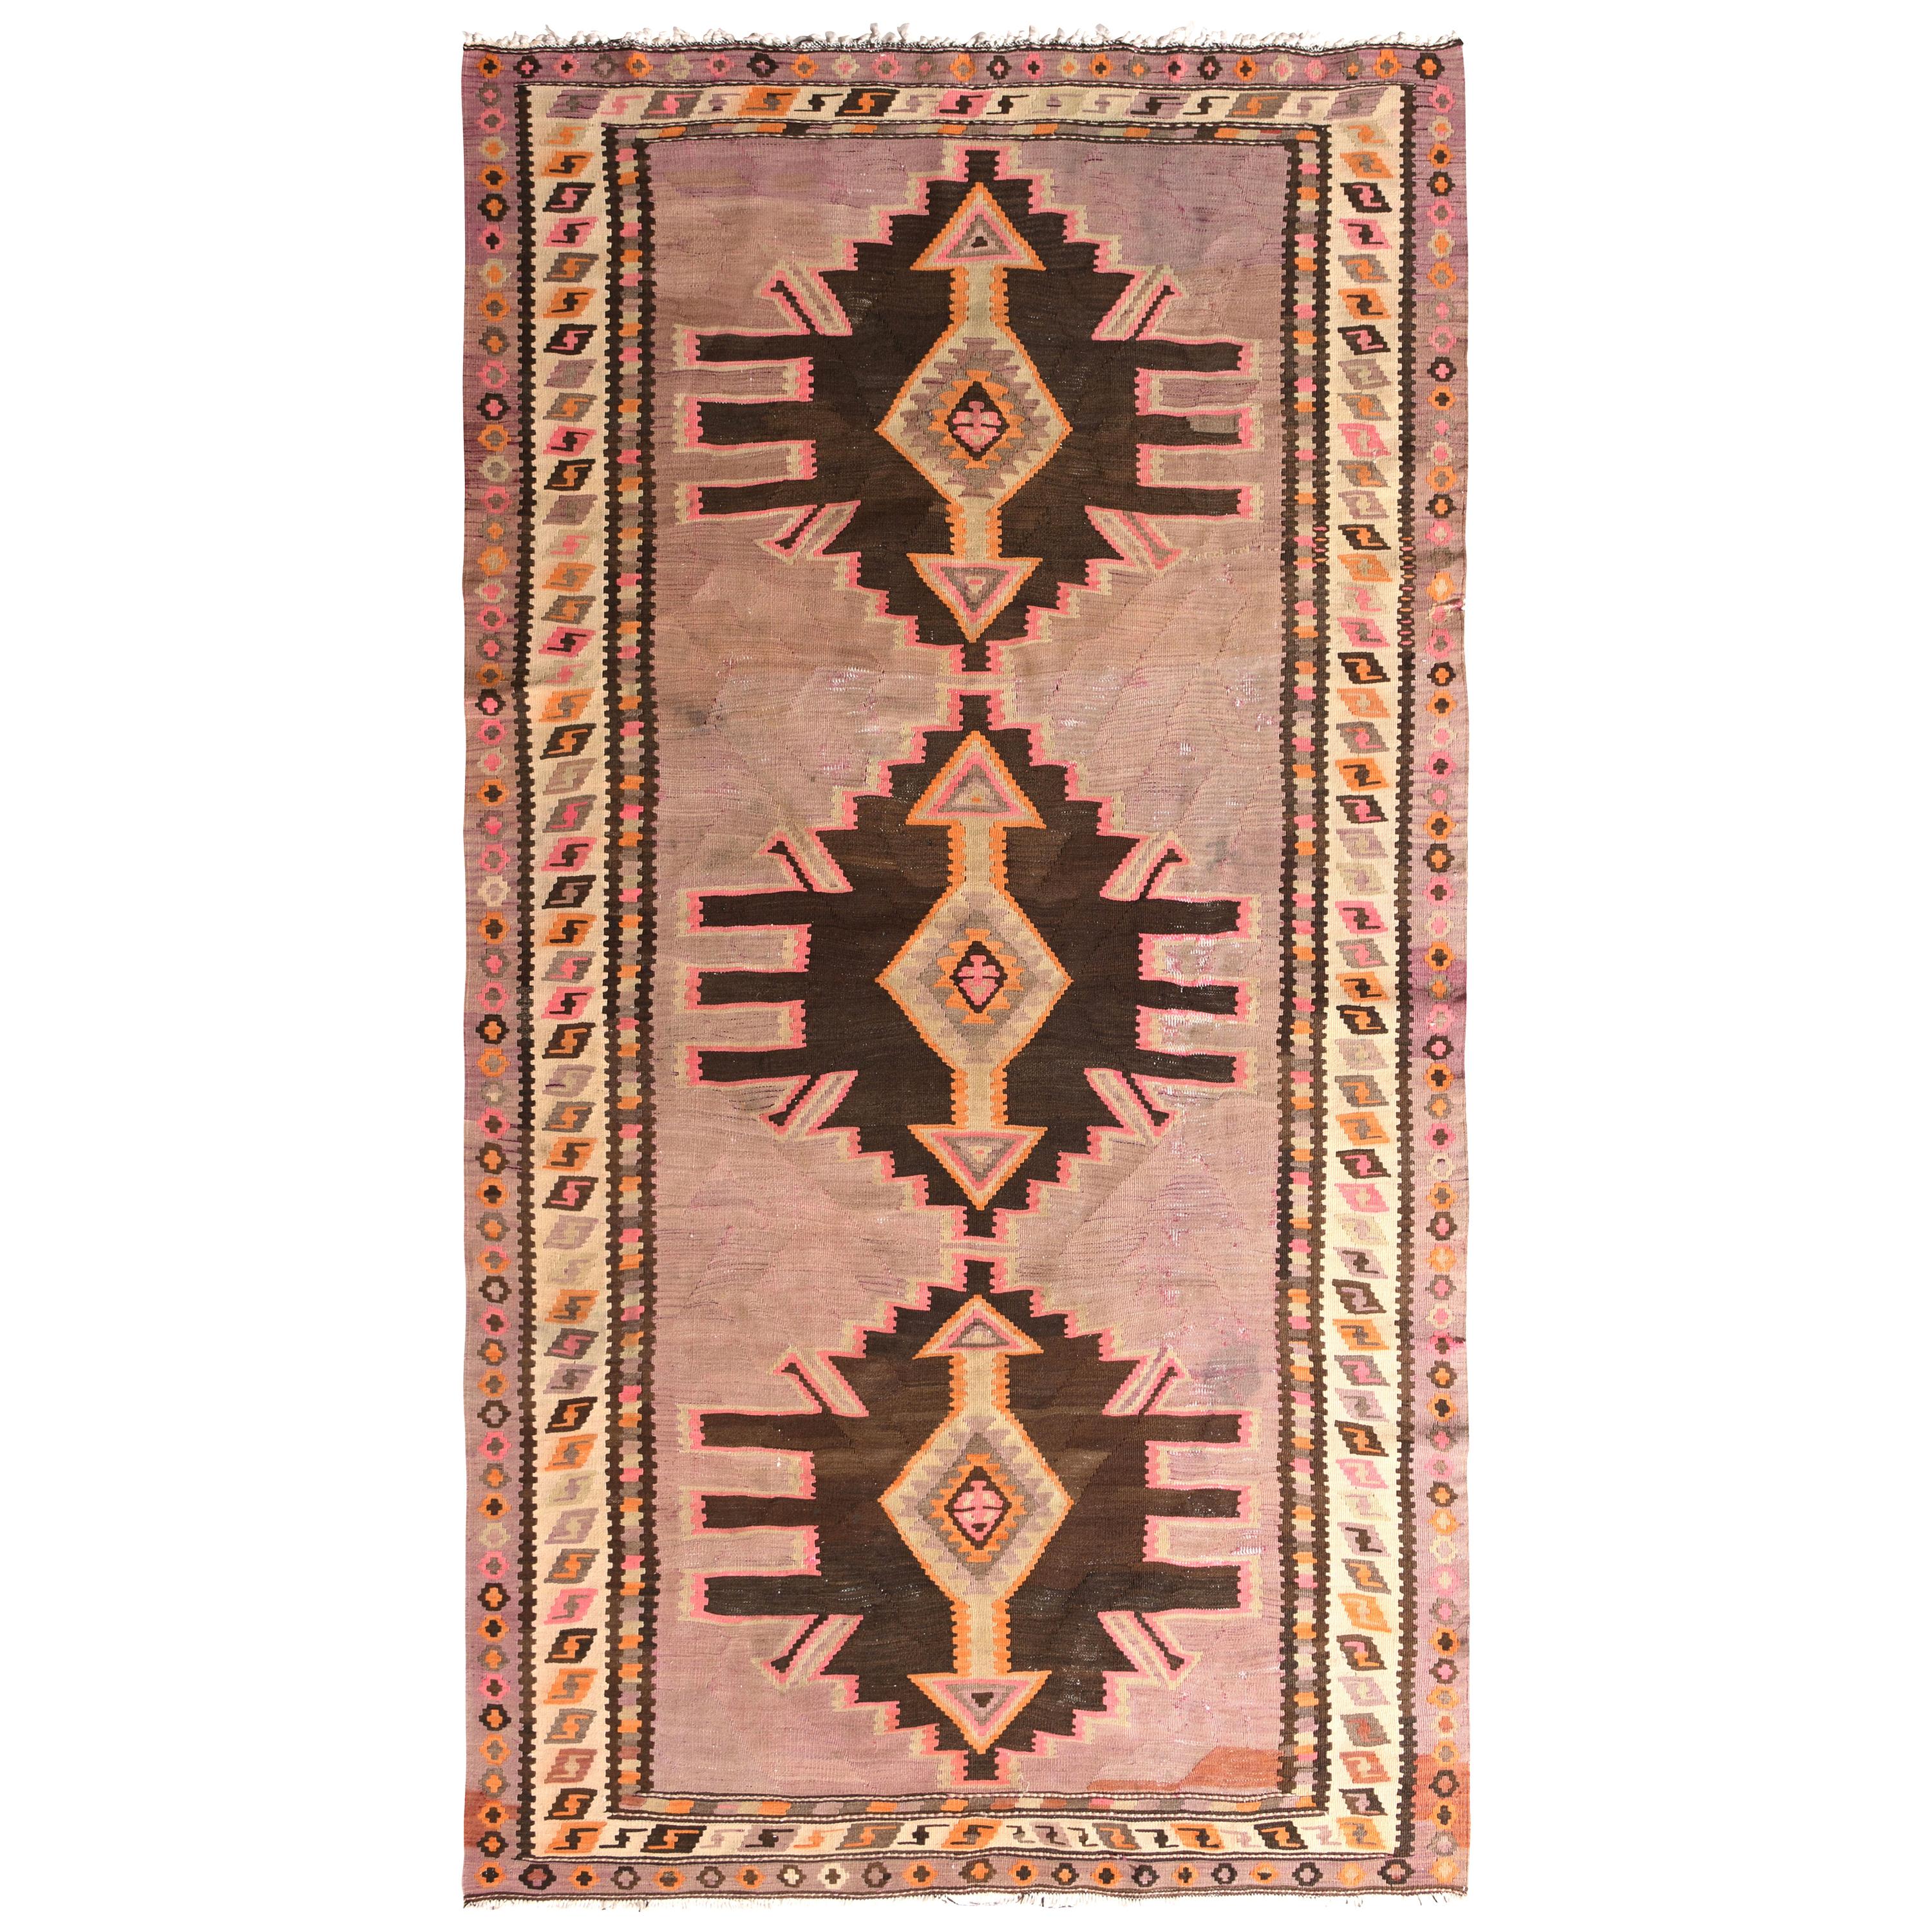 Midcentury Vintage Persian Kilim Rug in Beige Geometric Pattern by Rug & Kilim